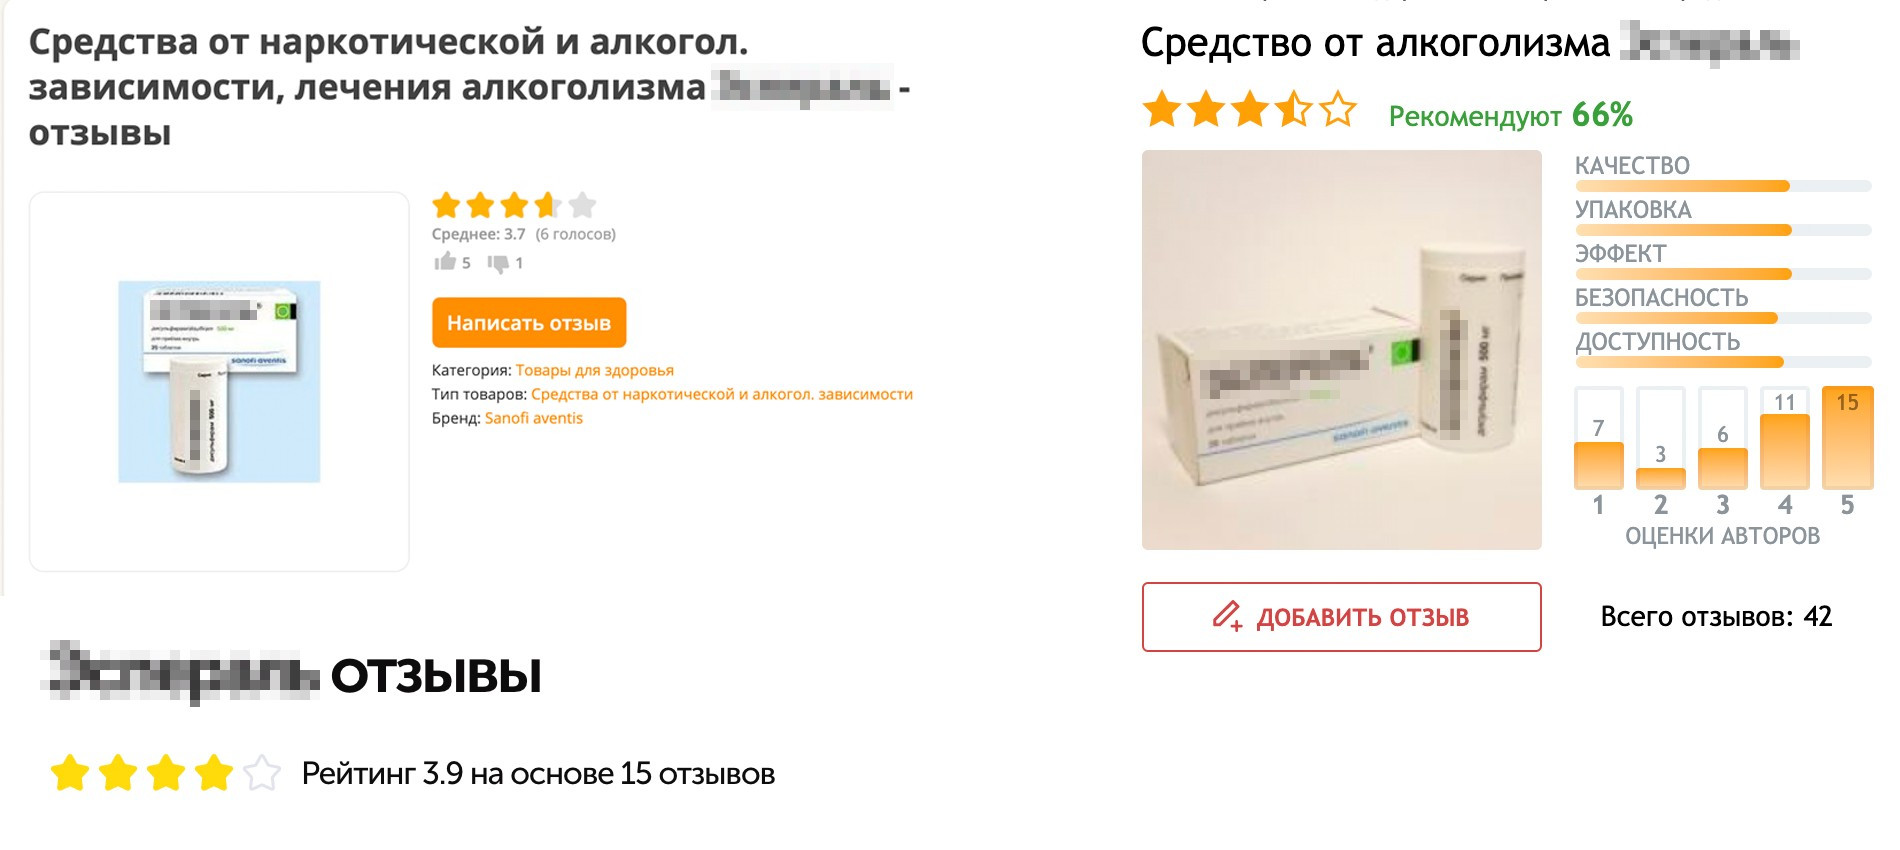 Рейтинг антиалкогольных препаратов на сайтах с отзывами. Источник: otzovik.com, irecommend.ru, uteka.ru